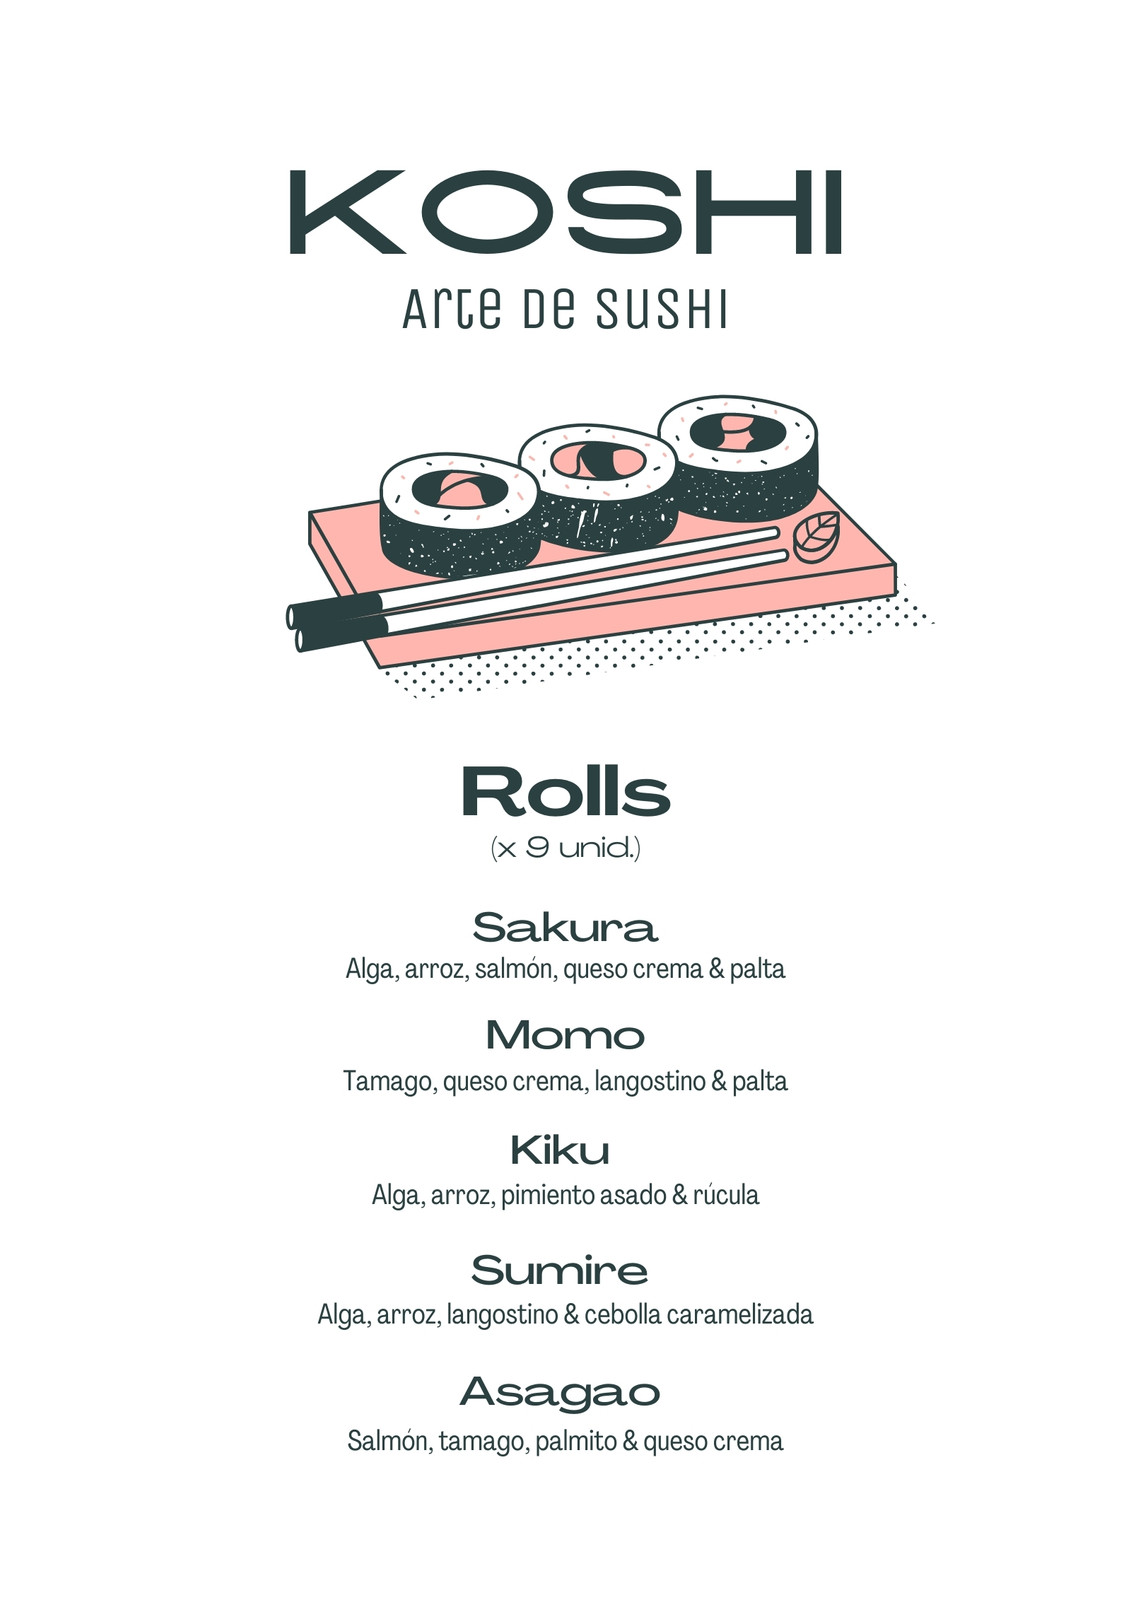 Flyer minimalista de lugar de sushi, color blanco y verde oscuro con plato de sushi rolls ilustrado